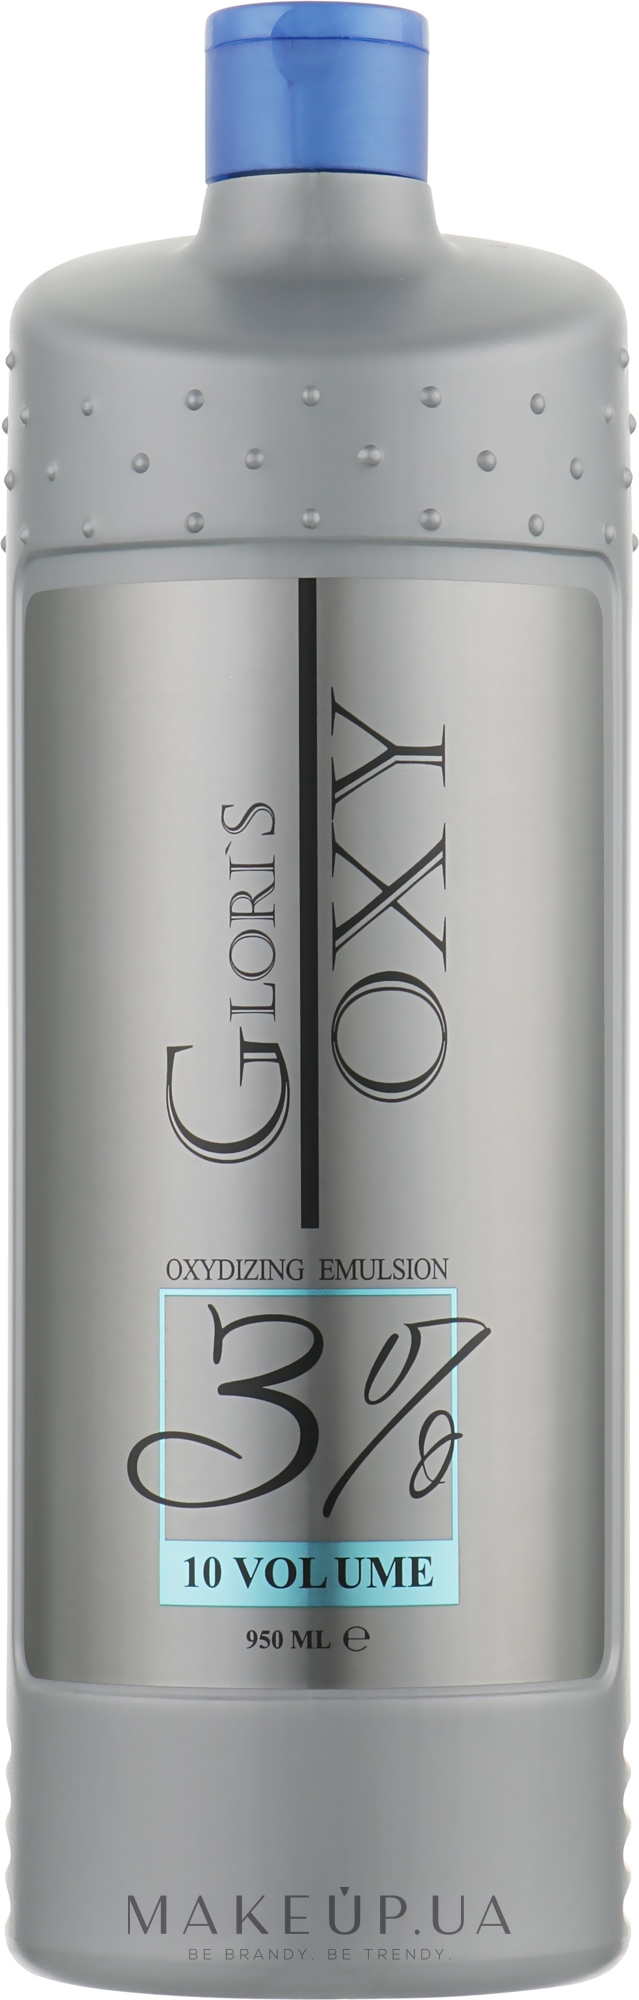 Окислювальна емульсія 3% - Glori's Oxy Oxidizing Emulsion 10 Volume 3 % — фото 950ml